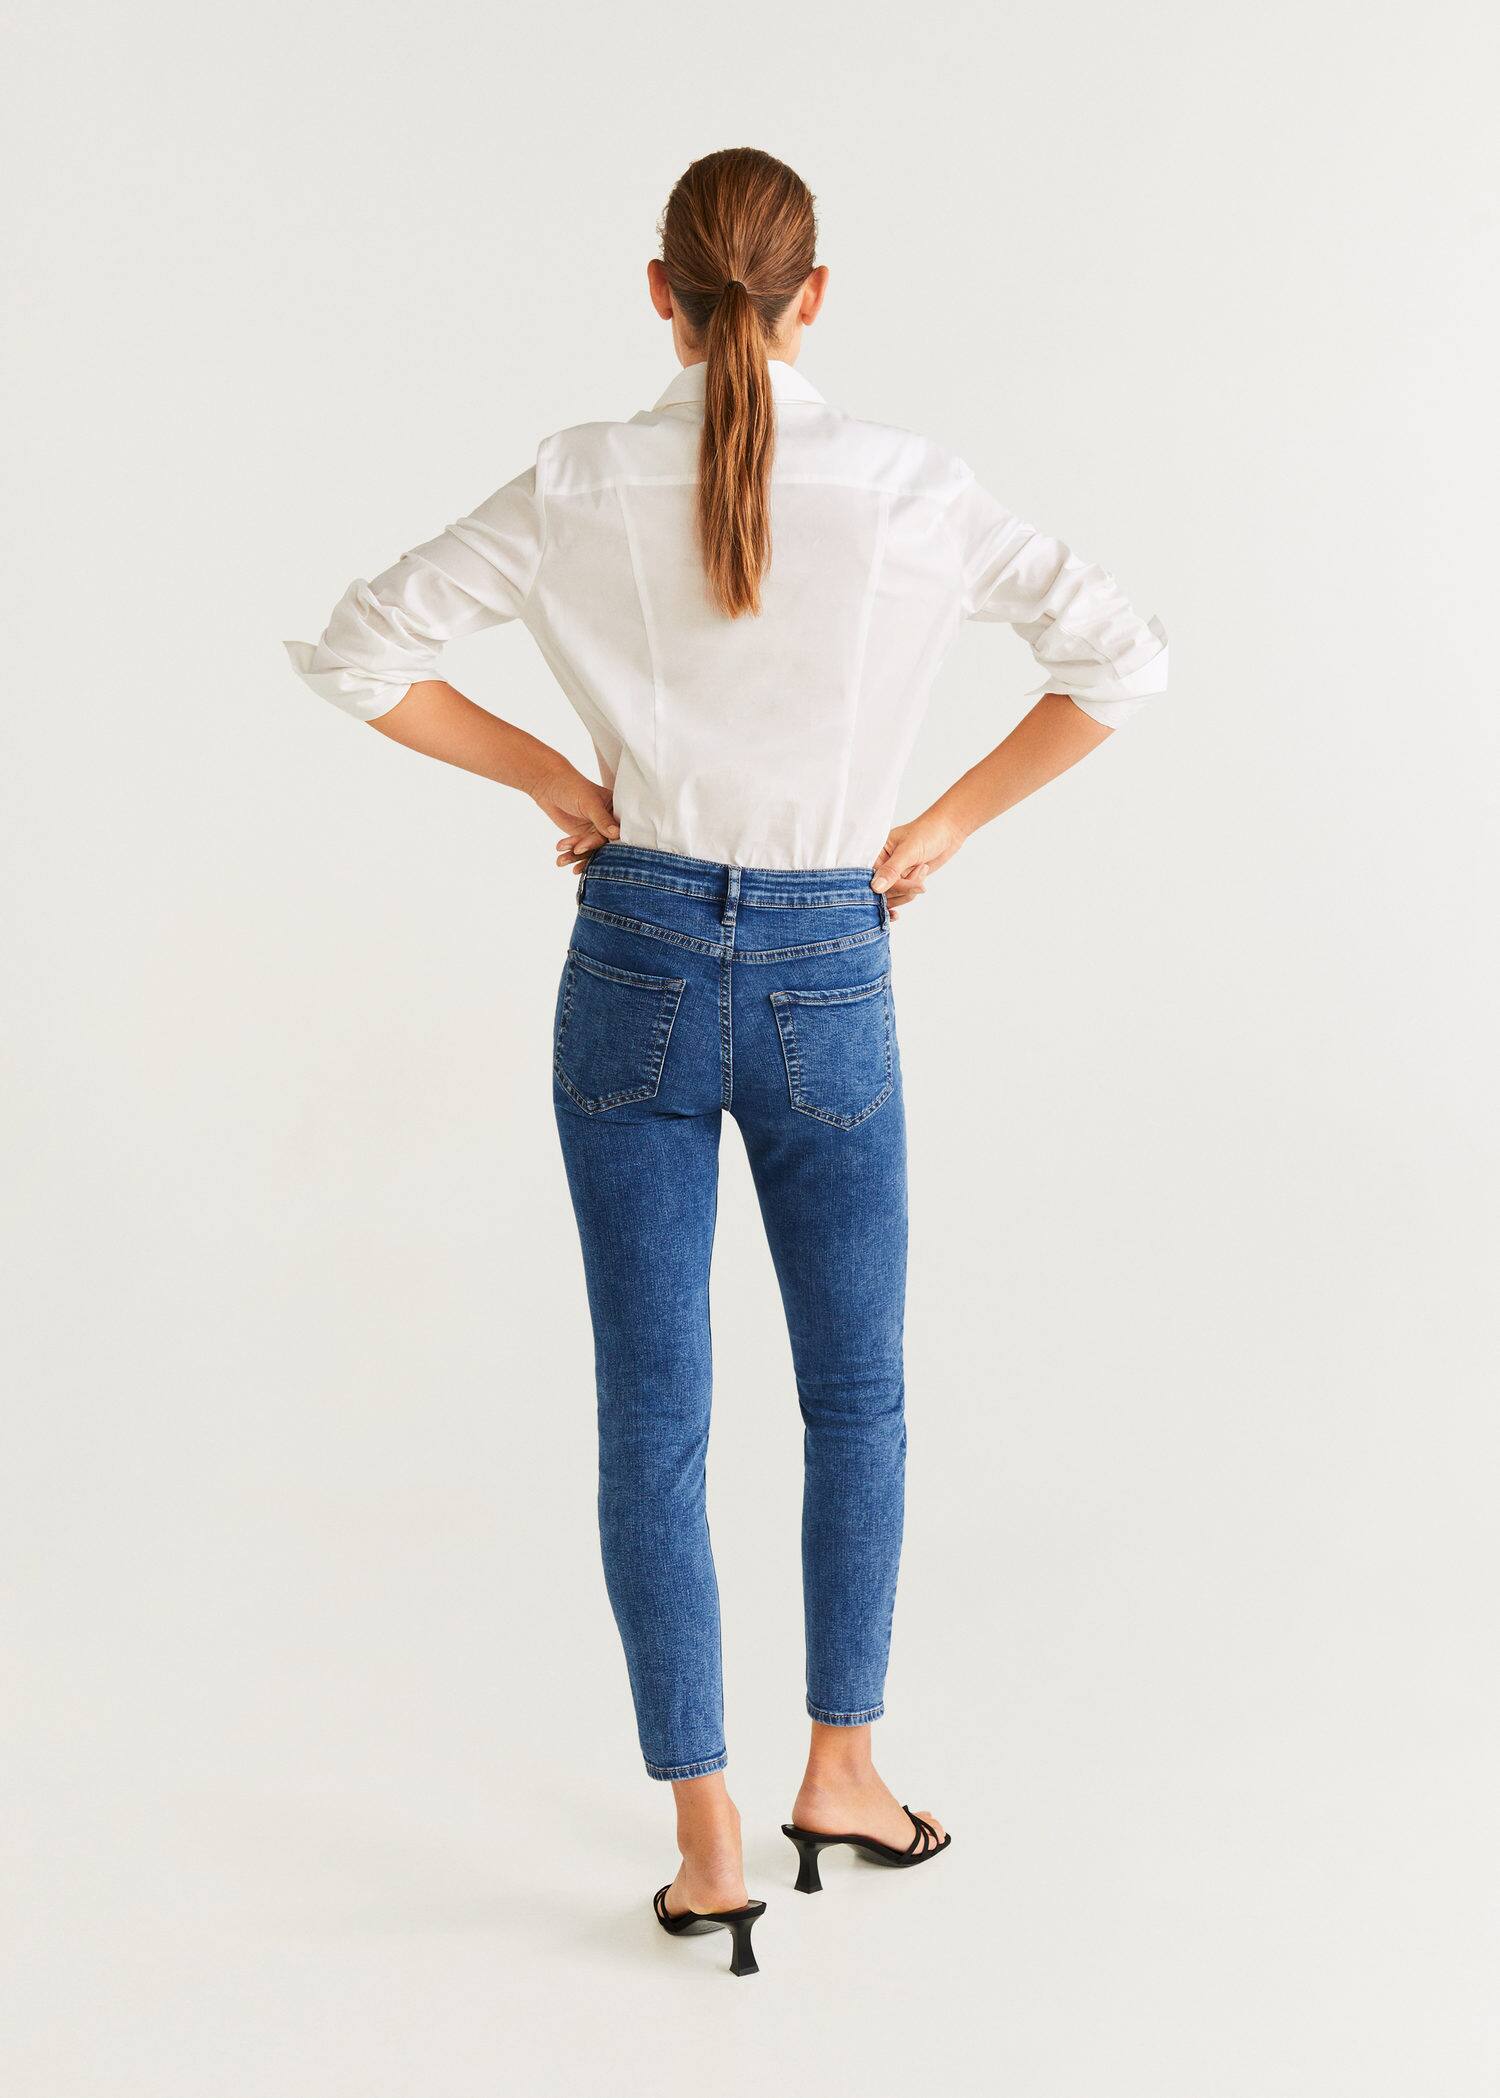 شلوار جینز زنانه 39551 سایز 34 تا 44 مارک MANGO